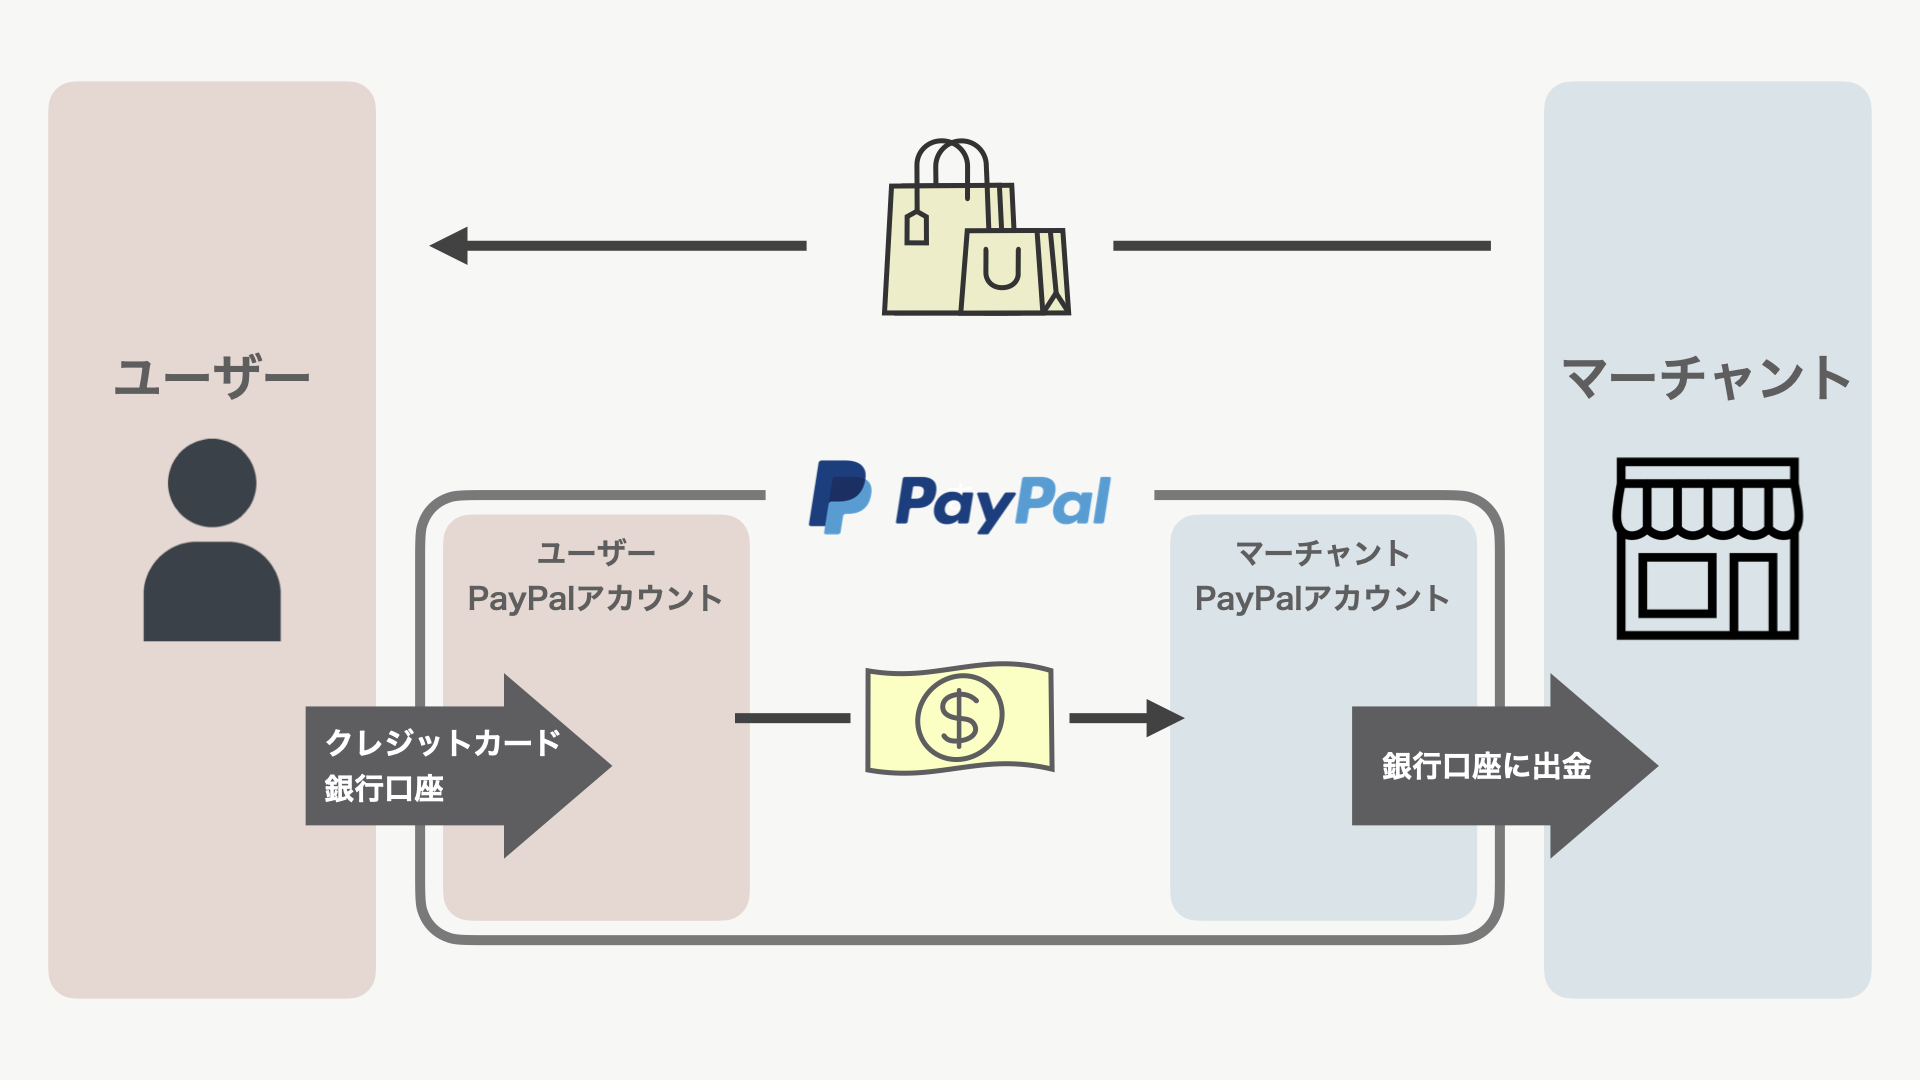 PayPalはオンライン上で決済や送金を行うサービスです。ユーザーはPayPalアカウントを作成し、PayPalにクレジットカードや銀行口座の情報を登録することで、PayPalのアカウントIDで商品を購入することができます。商品を販売したマーチャント(売り手)は、PayPal上で売上を受け取ります。